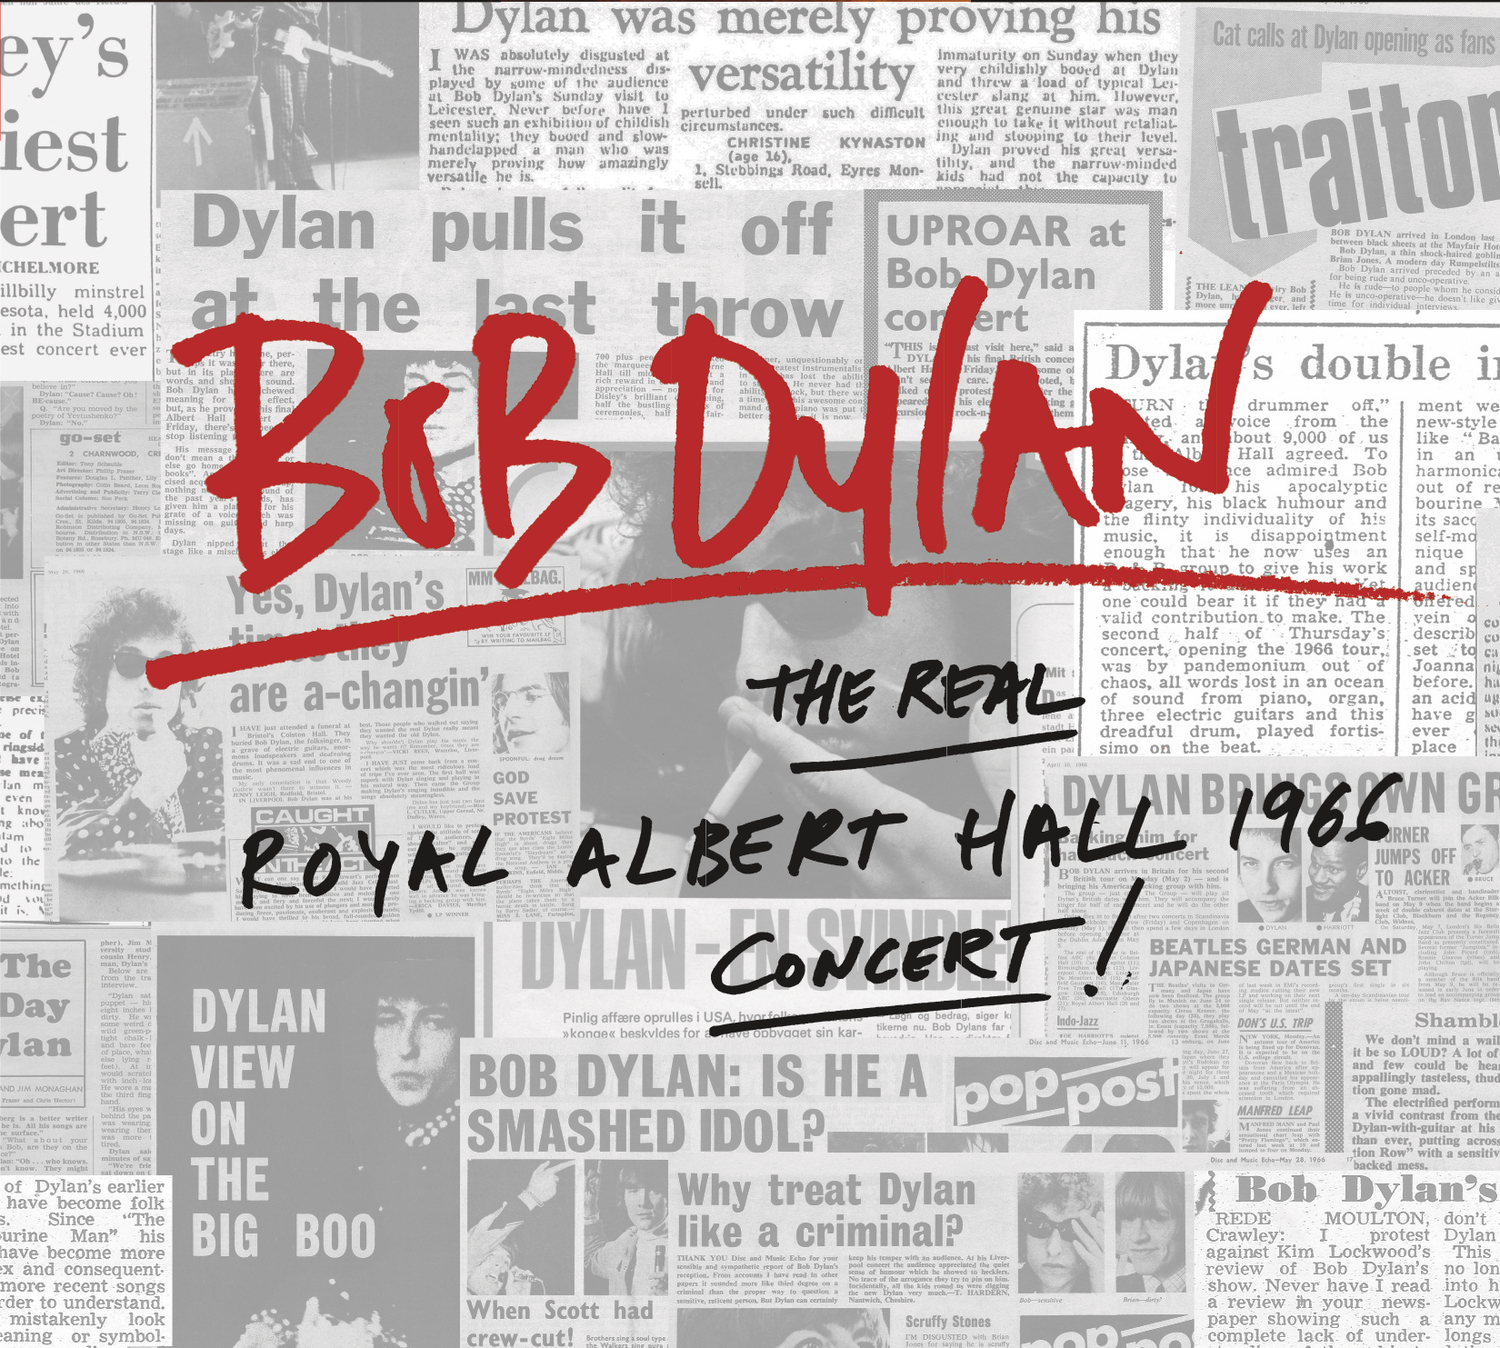 The Real Royal Albert Hall 1966 Concert